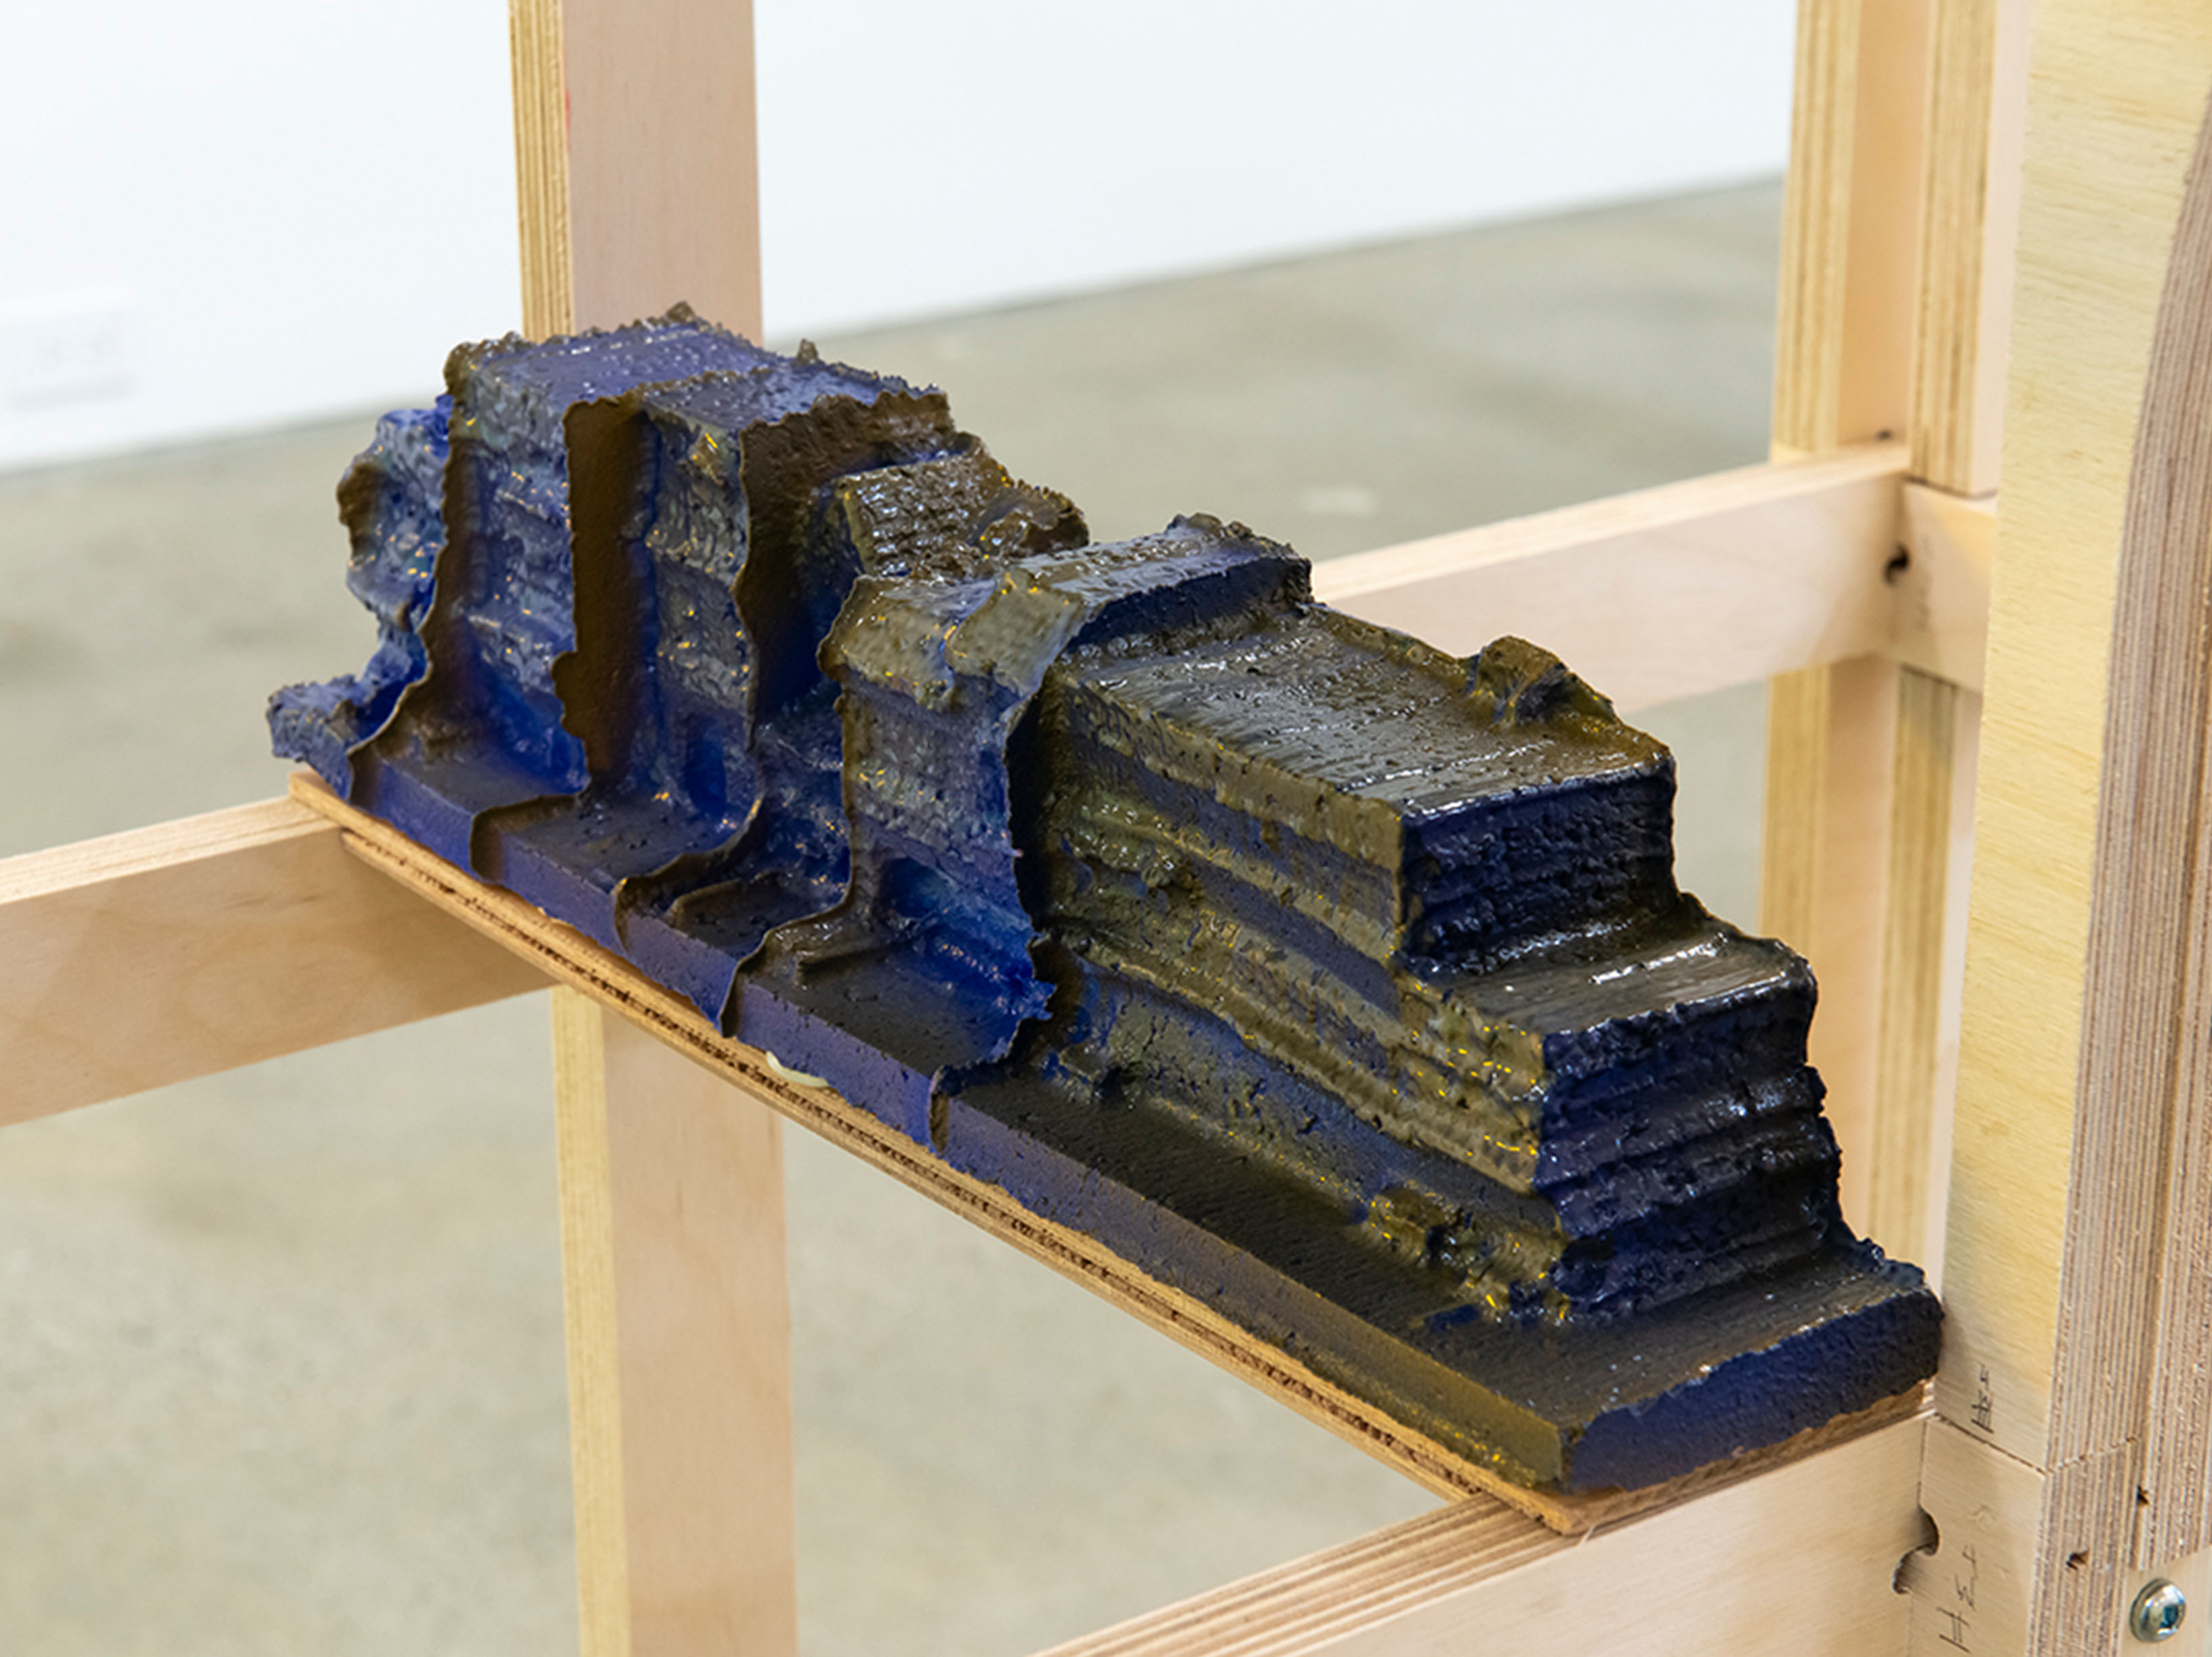 Blocks of blue-glazed ceramic structures resting inside of a wooden frame.